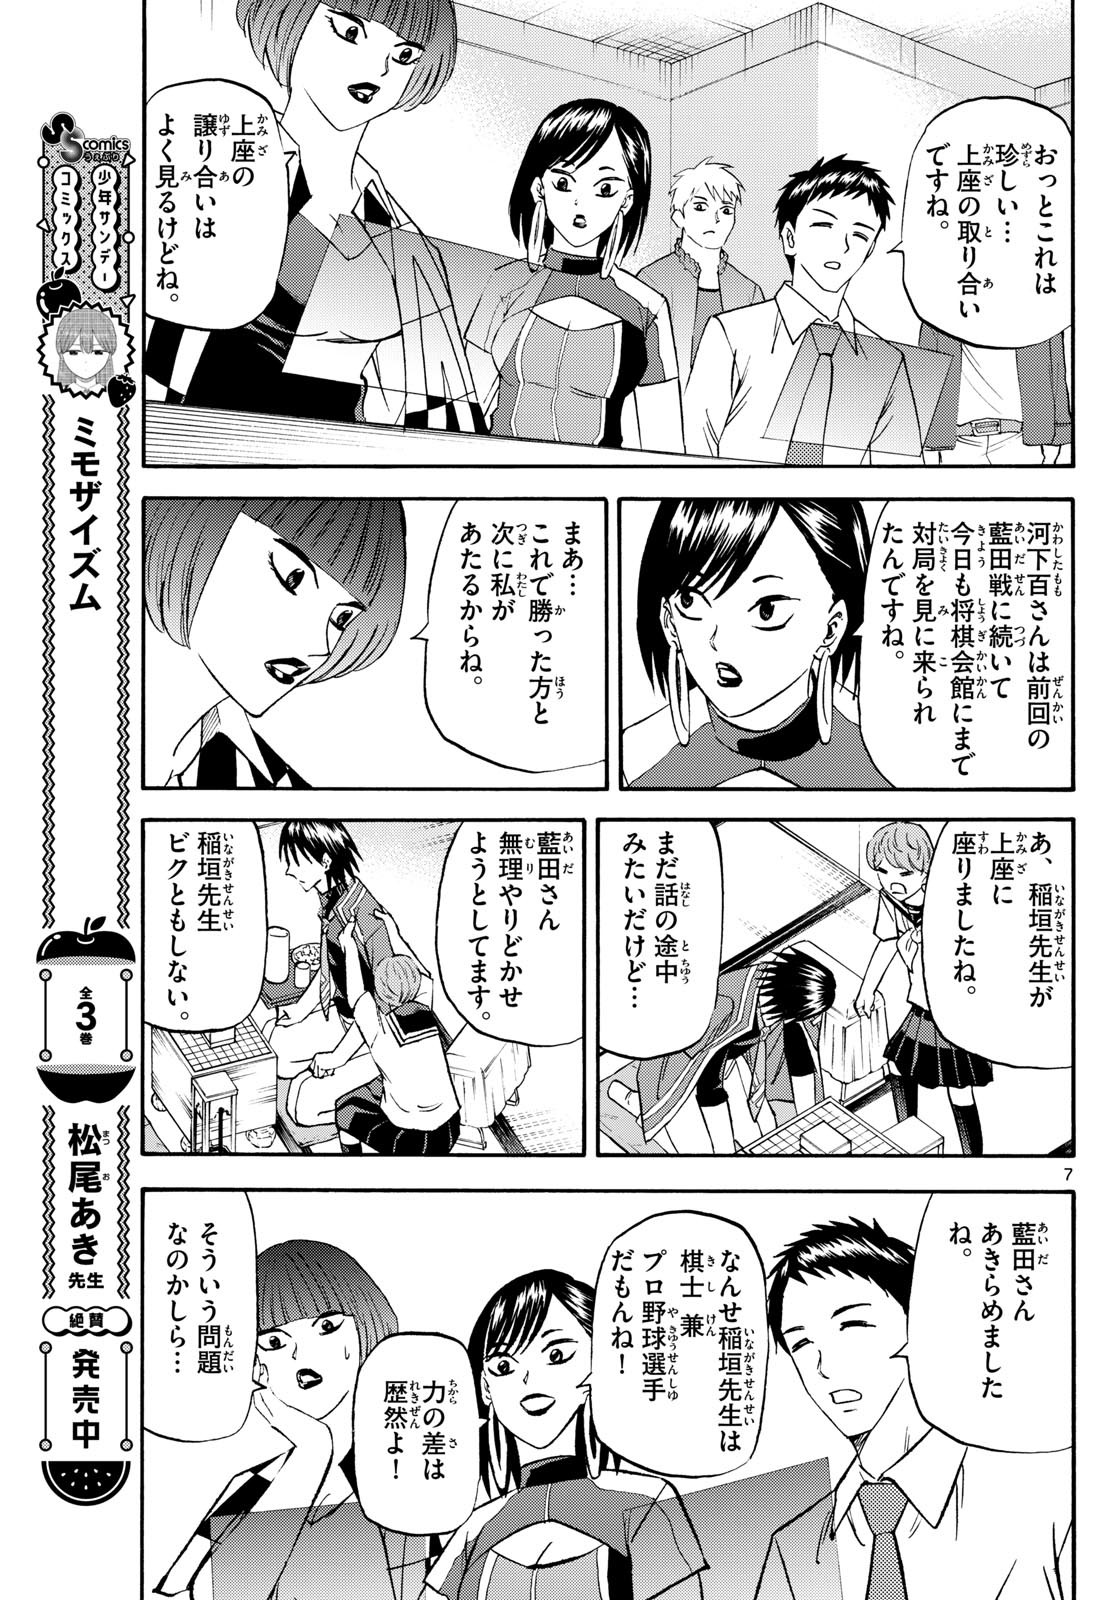 Tatsu to Ichigo - Chapter 197 - Page 7